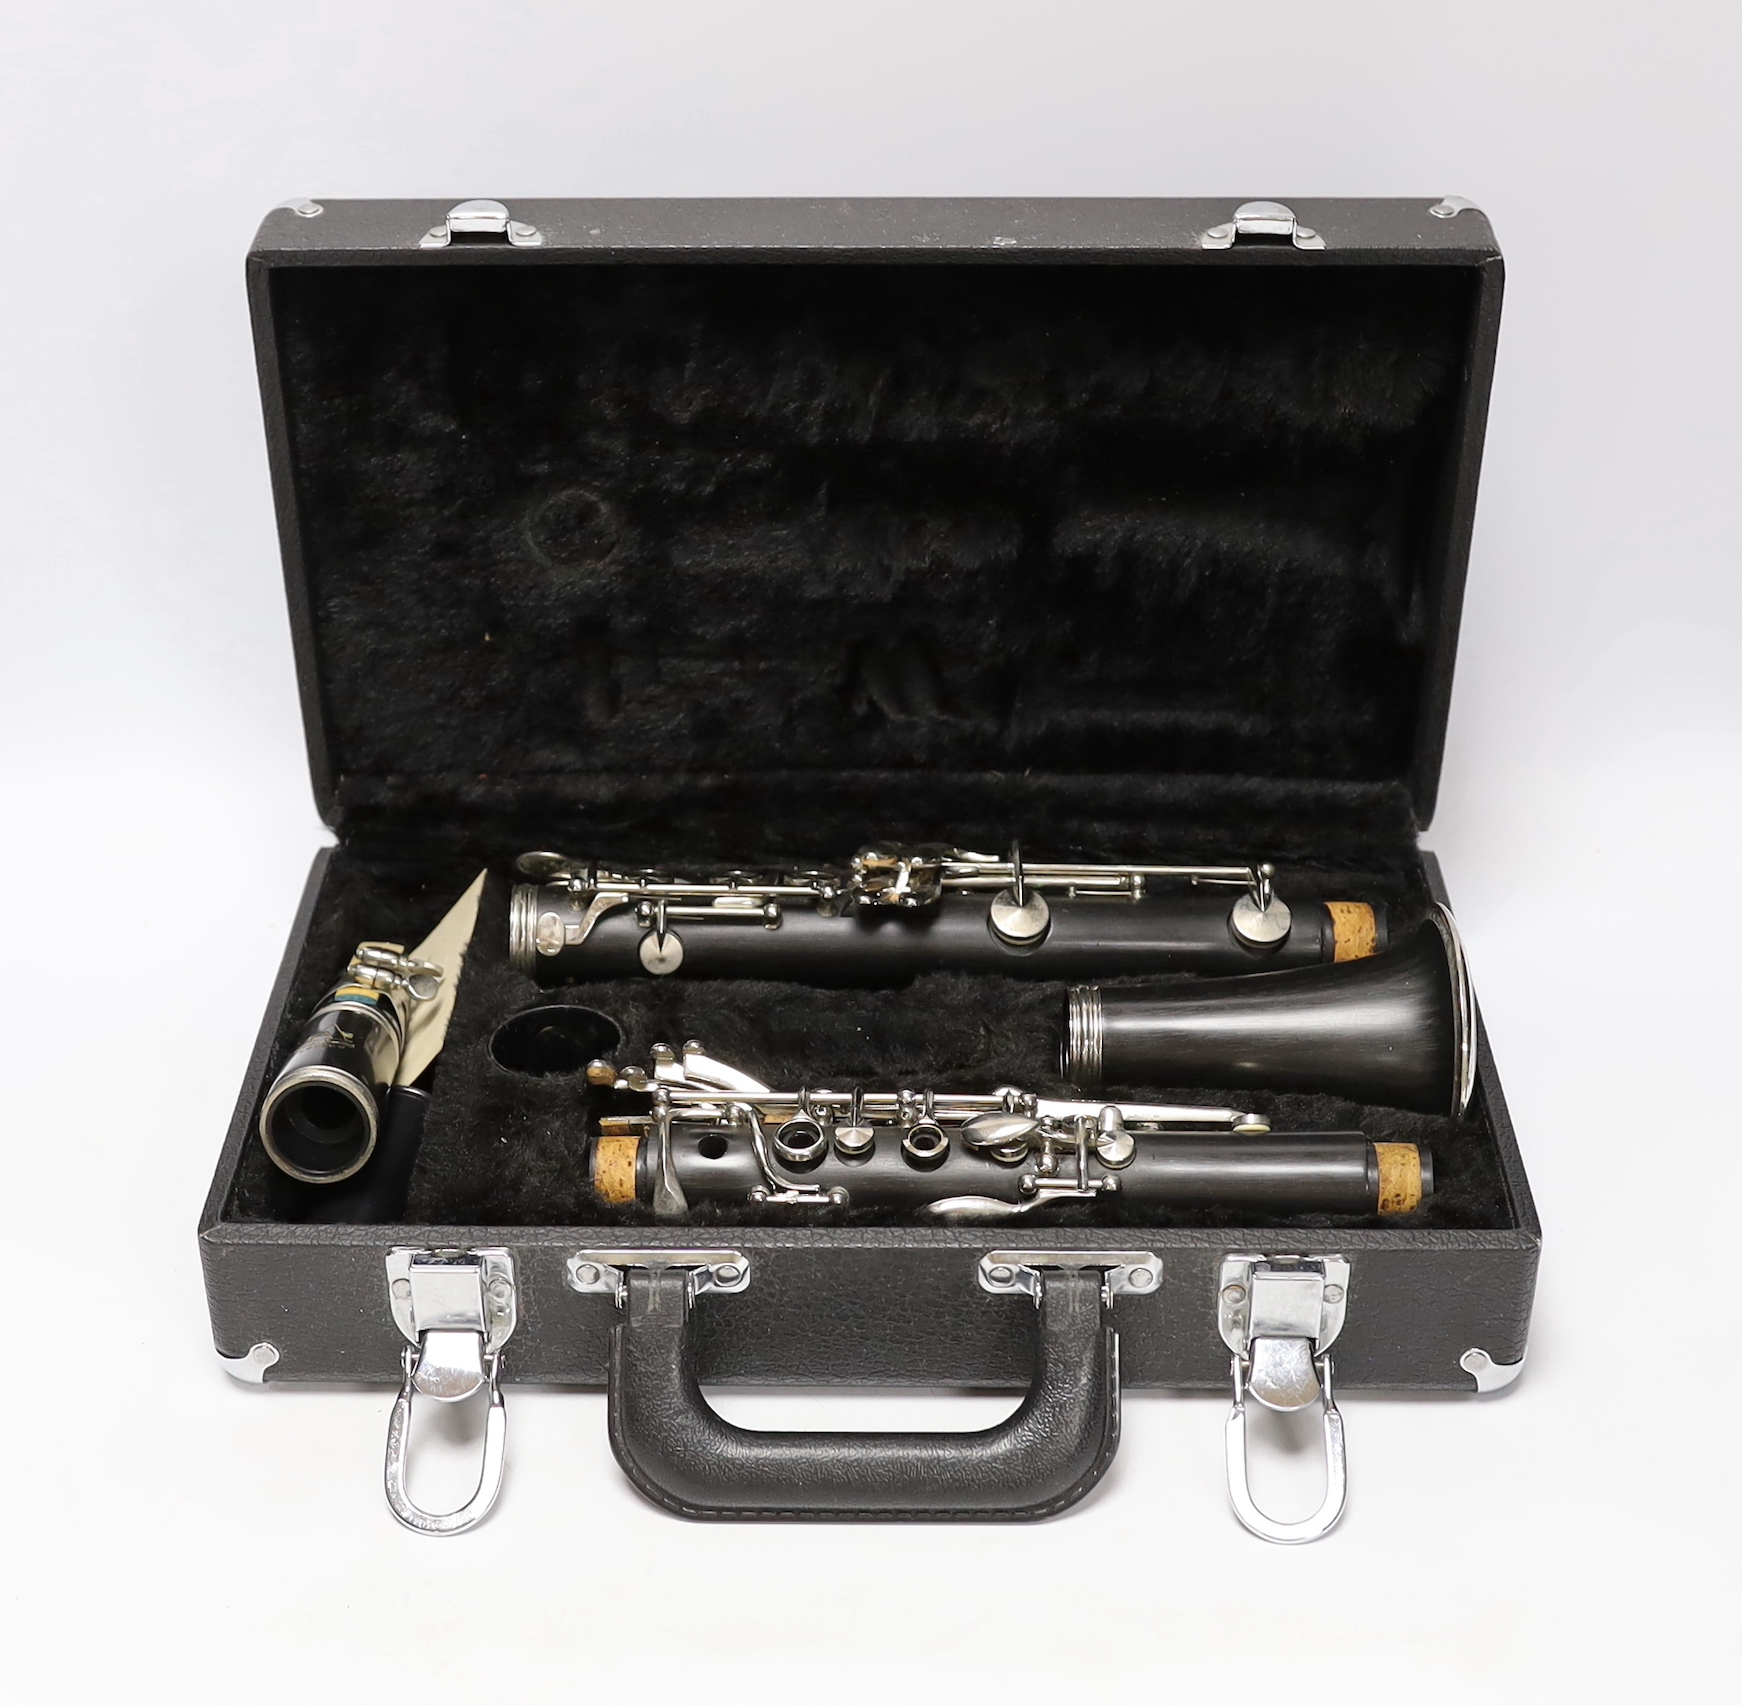 An Arbiter Pro Sound wooden bodied clarinet